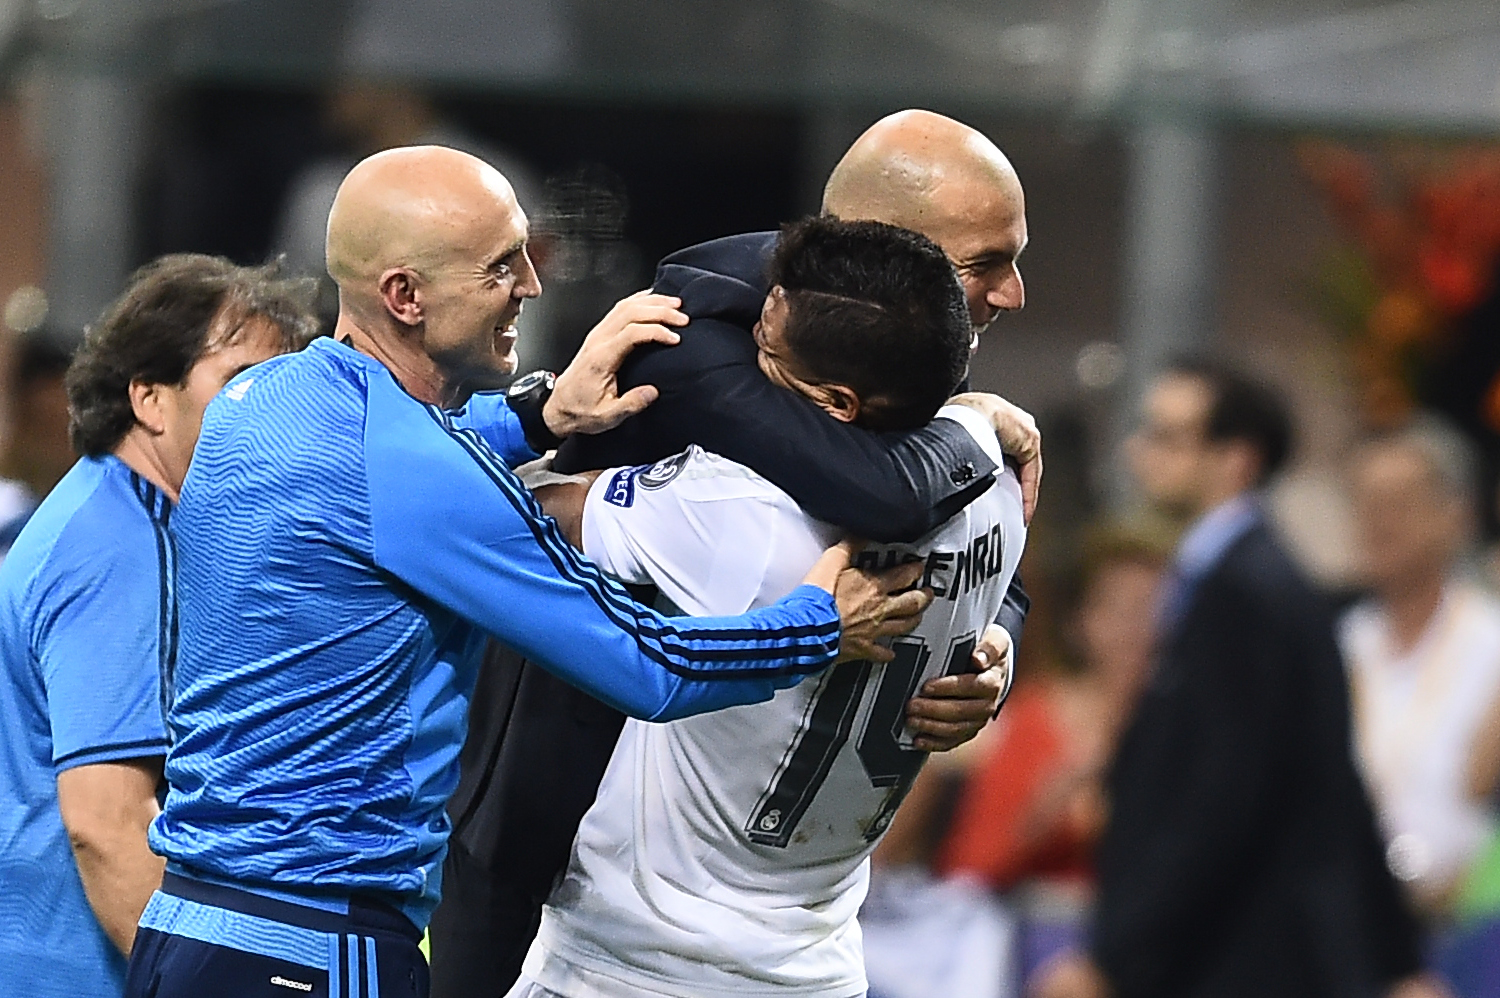 Zidane abraza a Casemiro tras al final de Milán